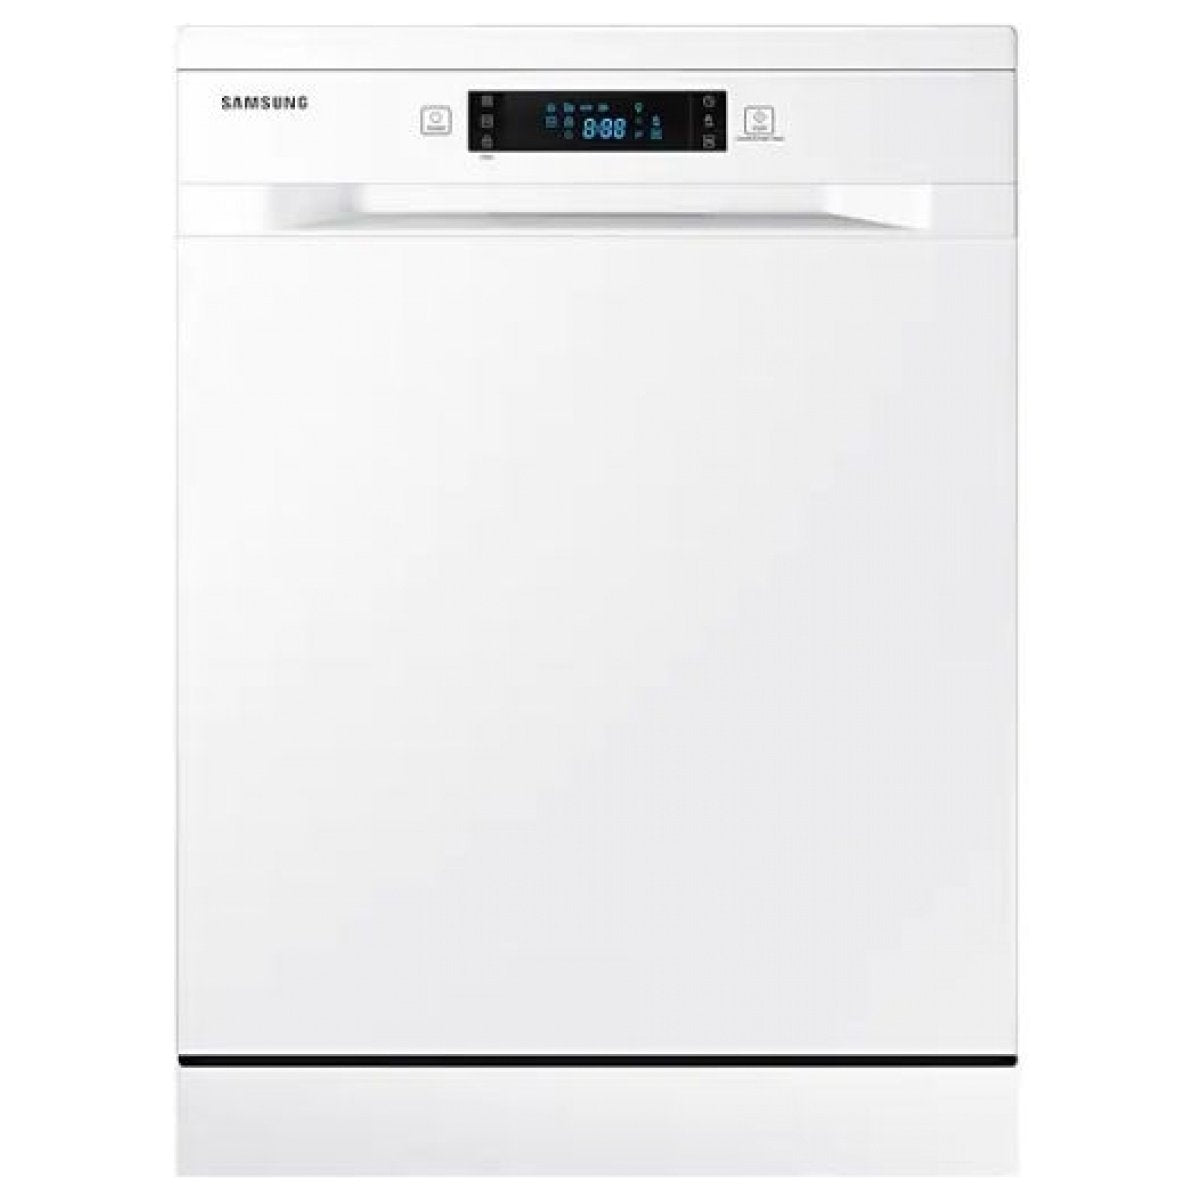 Samsung Dishwasher 7 Program DW60M5070FS/FH / DW60M5070FW/FH